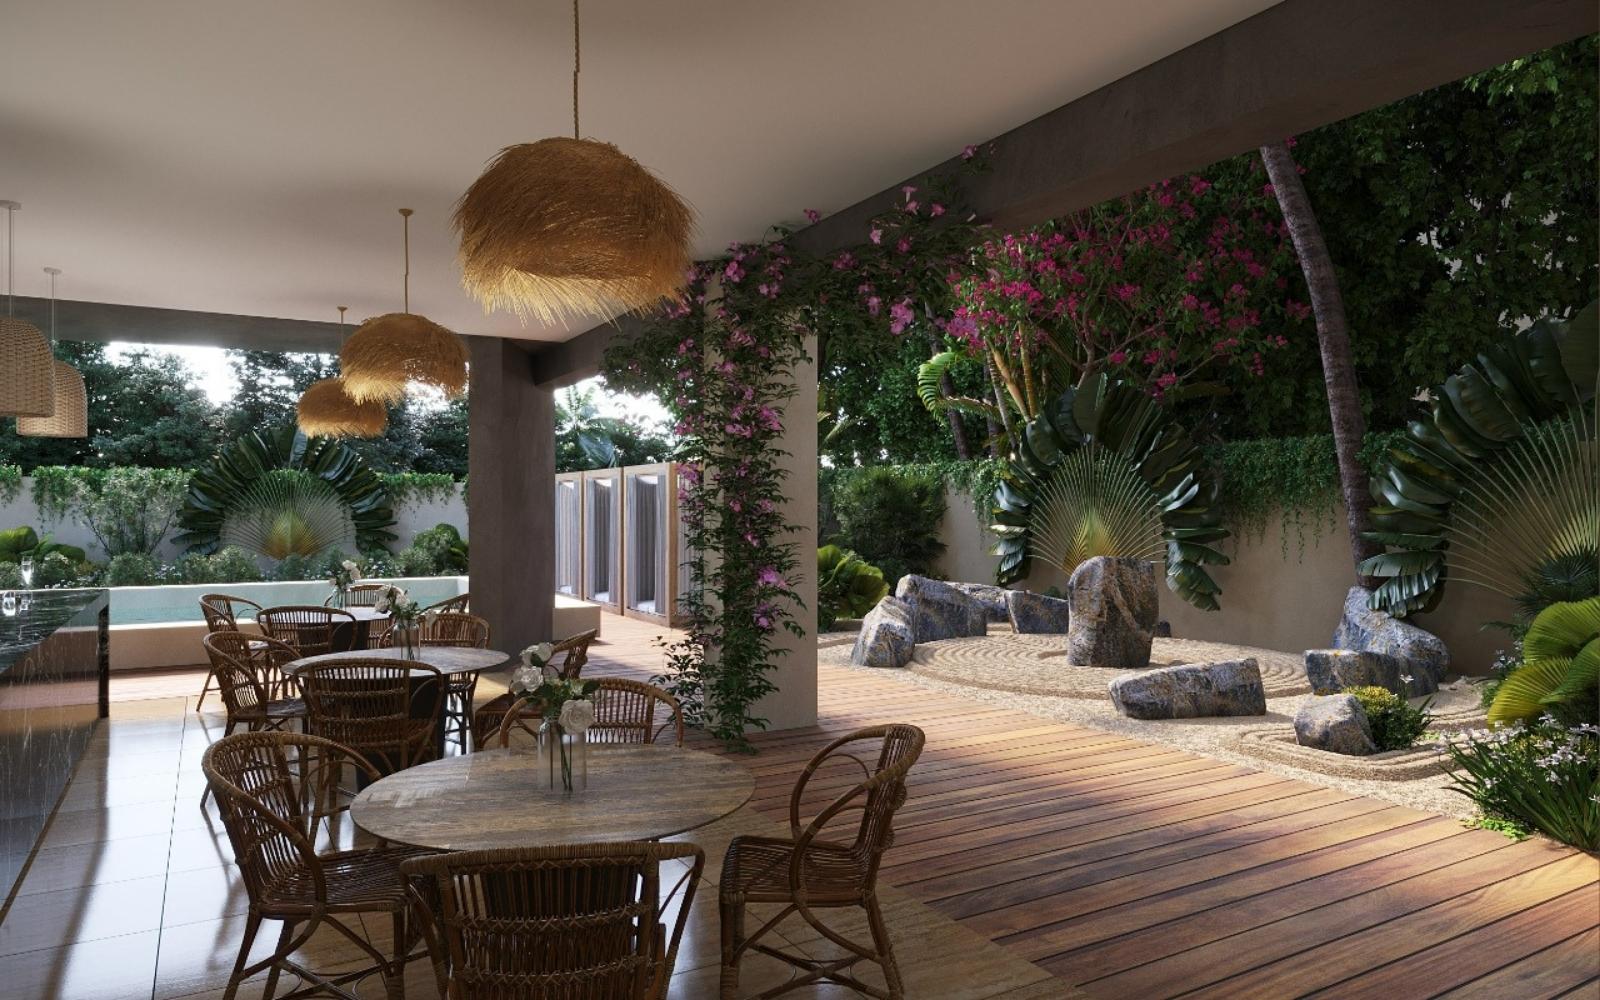 Condominio con terraza, Gimnasio, Alberca, Lounge Bar y Spa, Zona Norte, Merida.